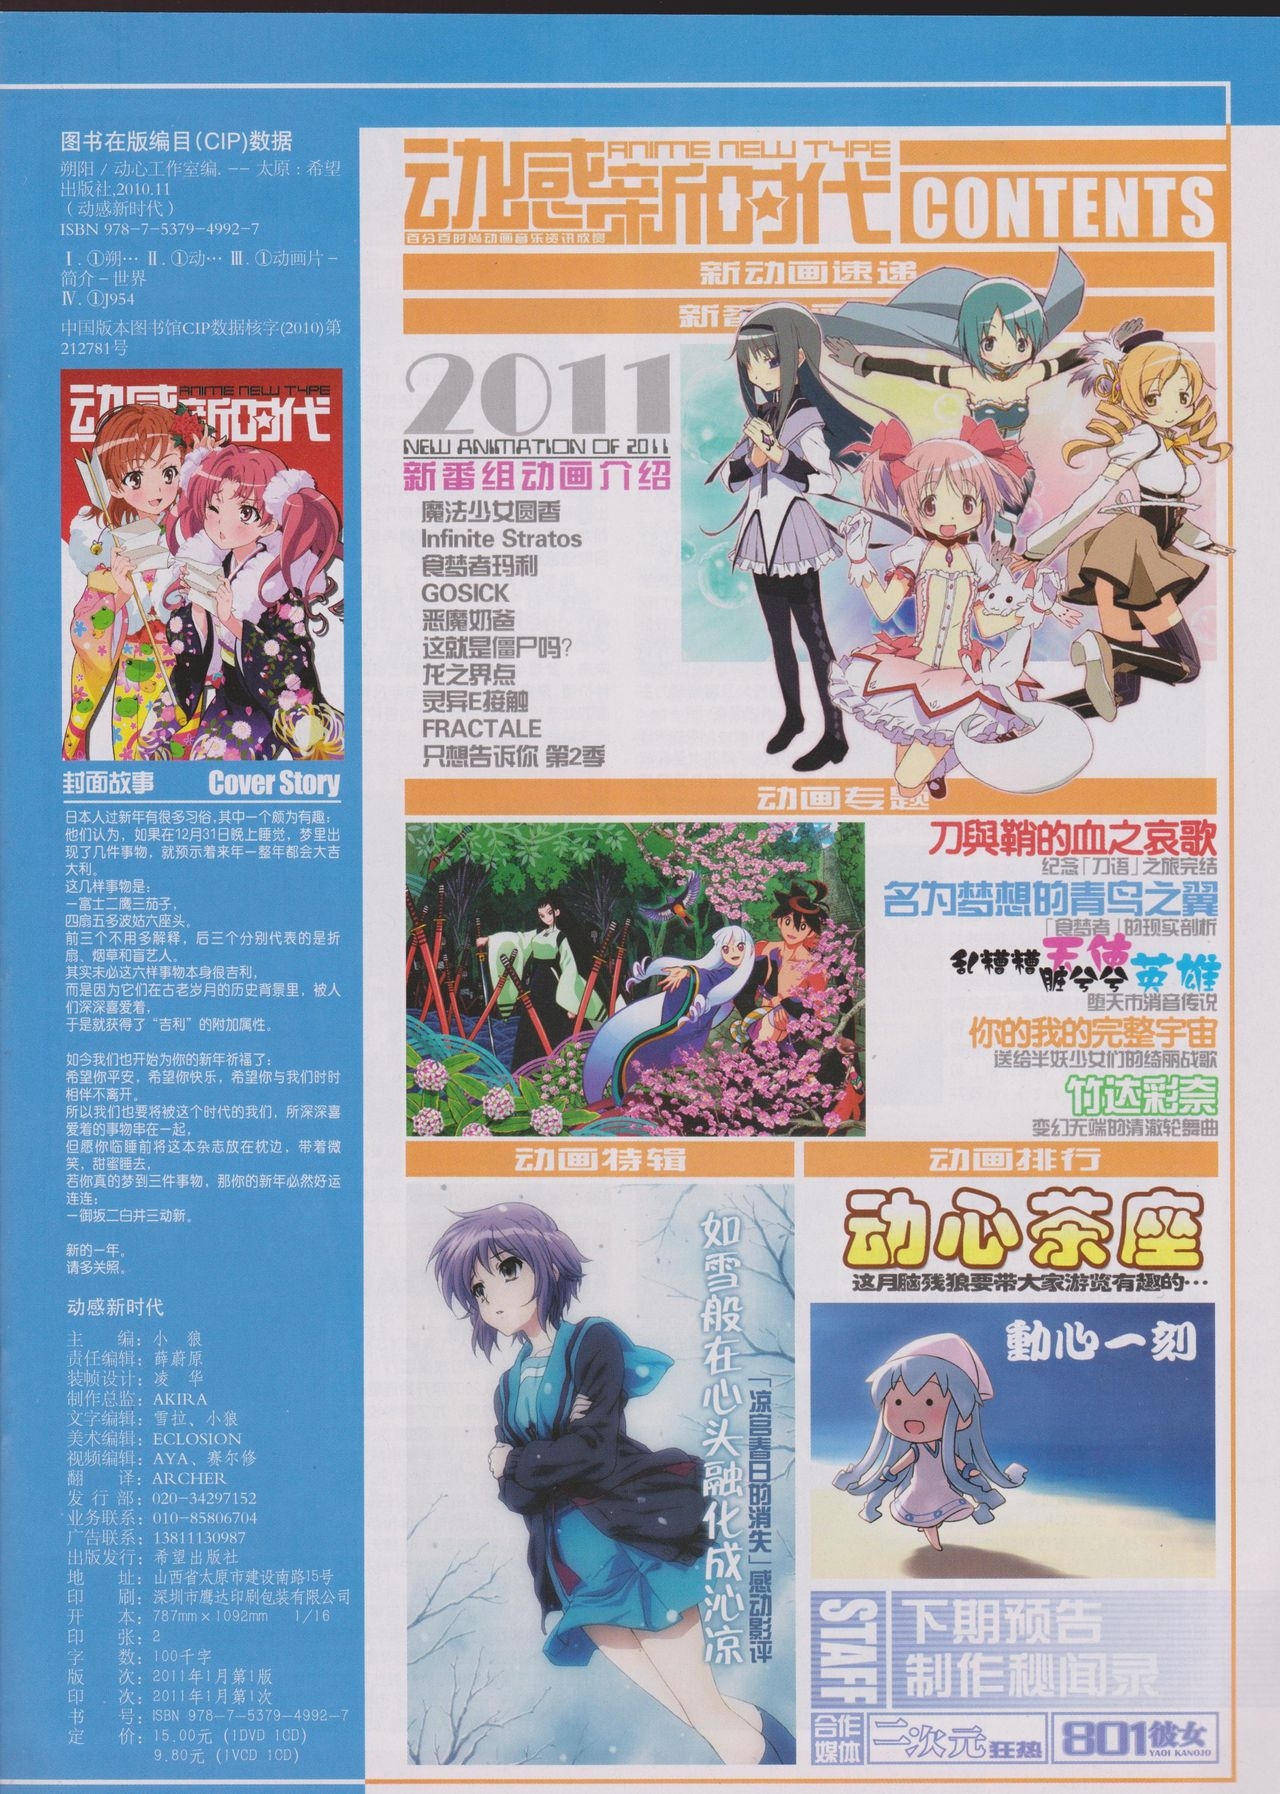 Anime New Type Vol.096 2